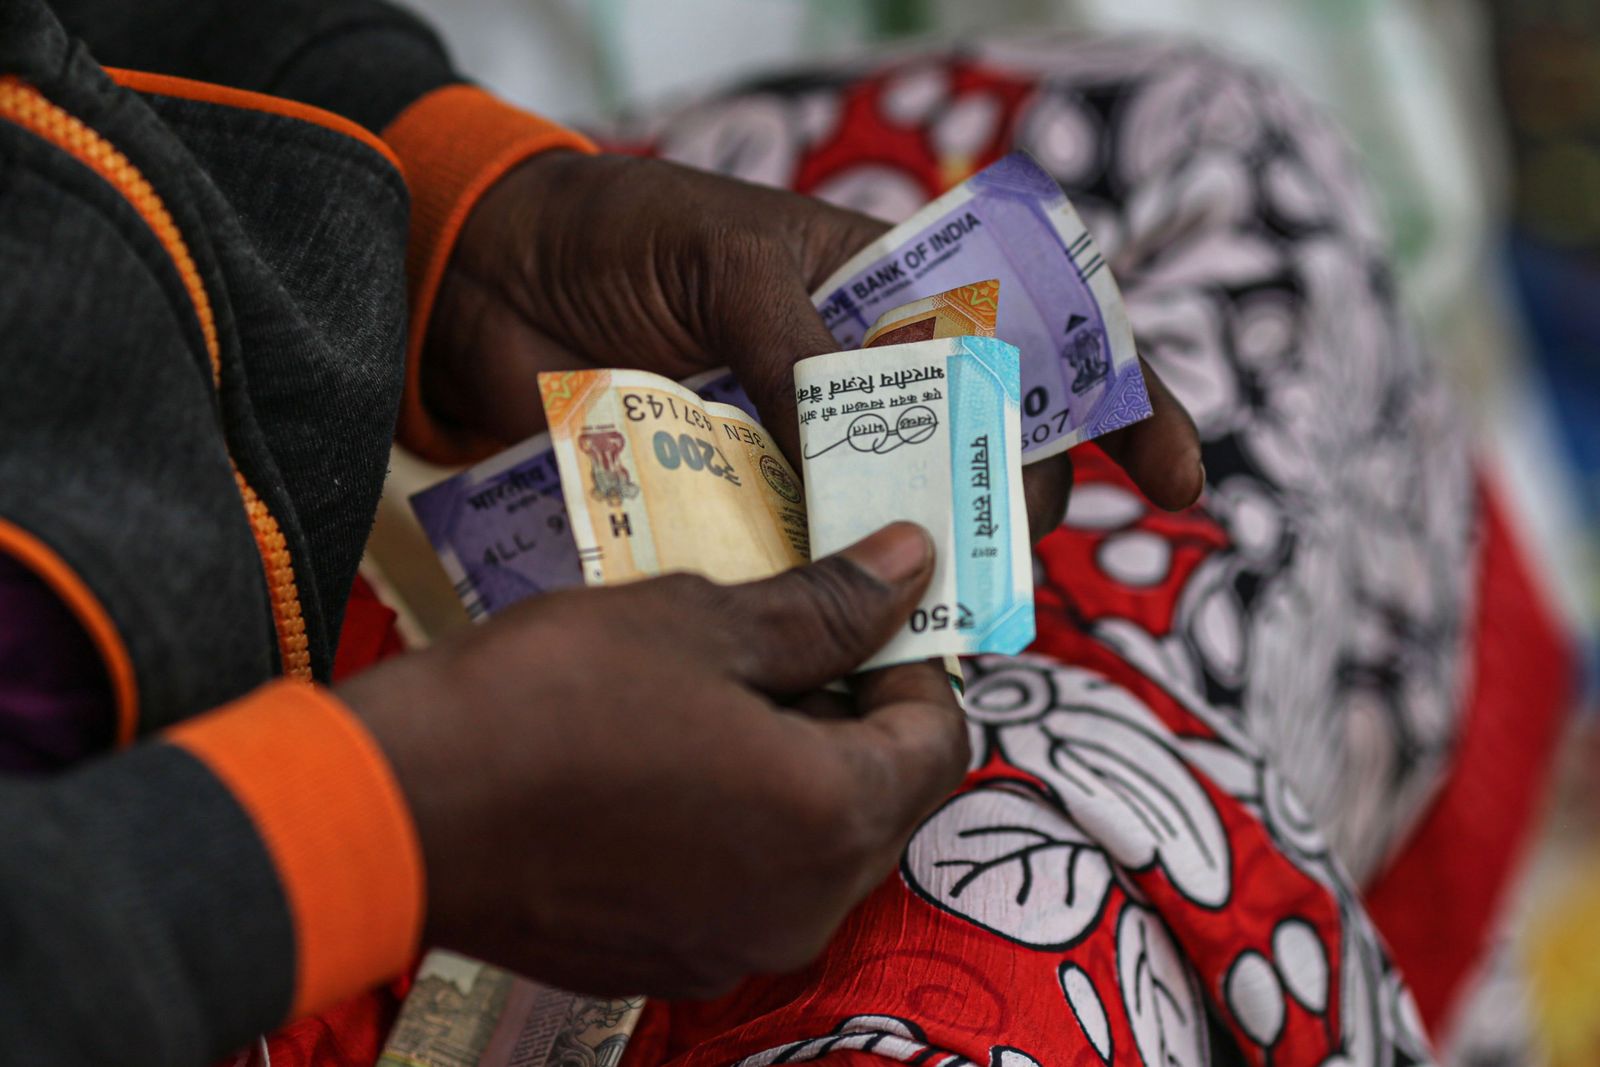 الروبية الهندية تهبط إلى مستوى قياسي مع خروج الأموال الأجنبية 